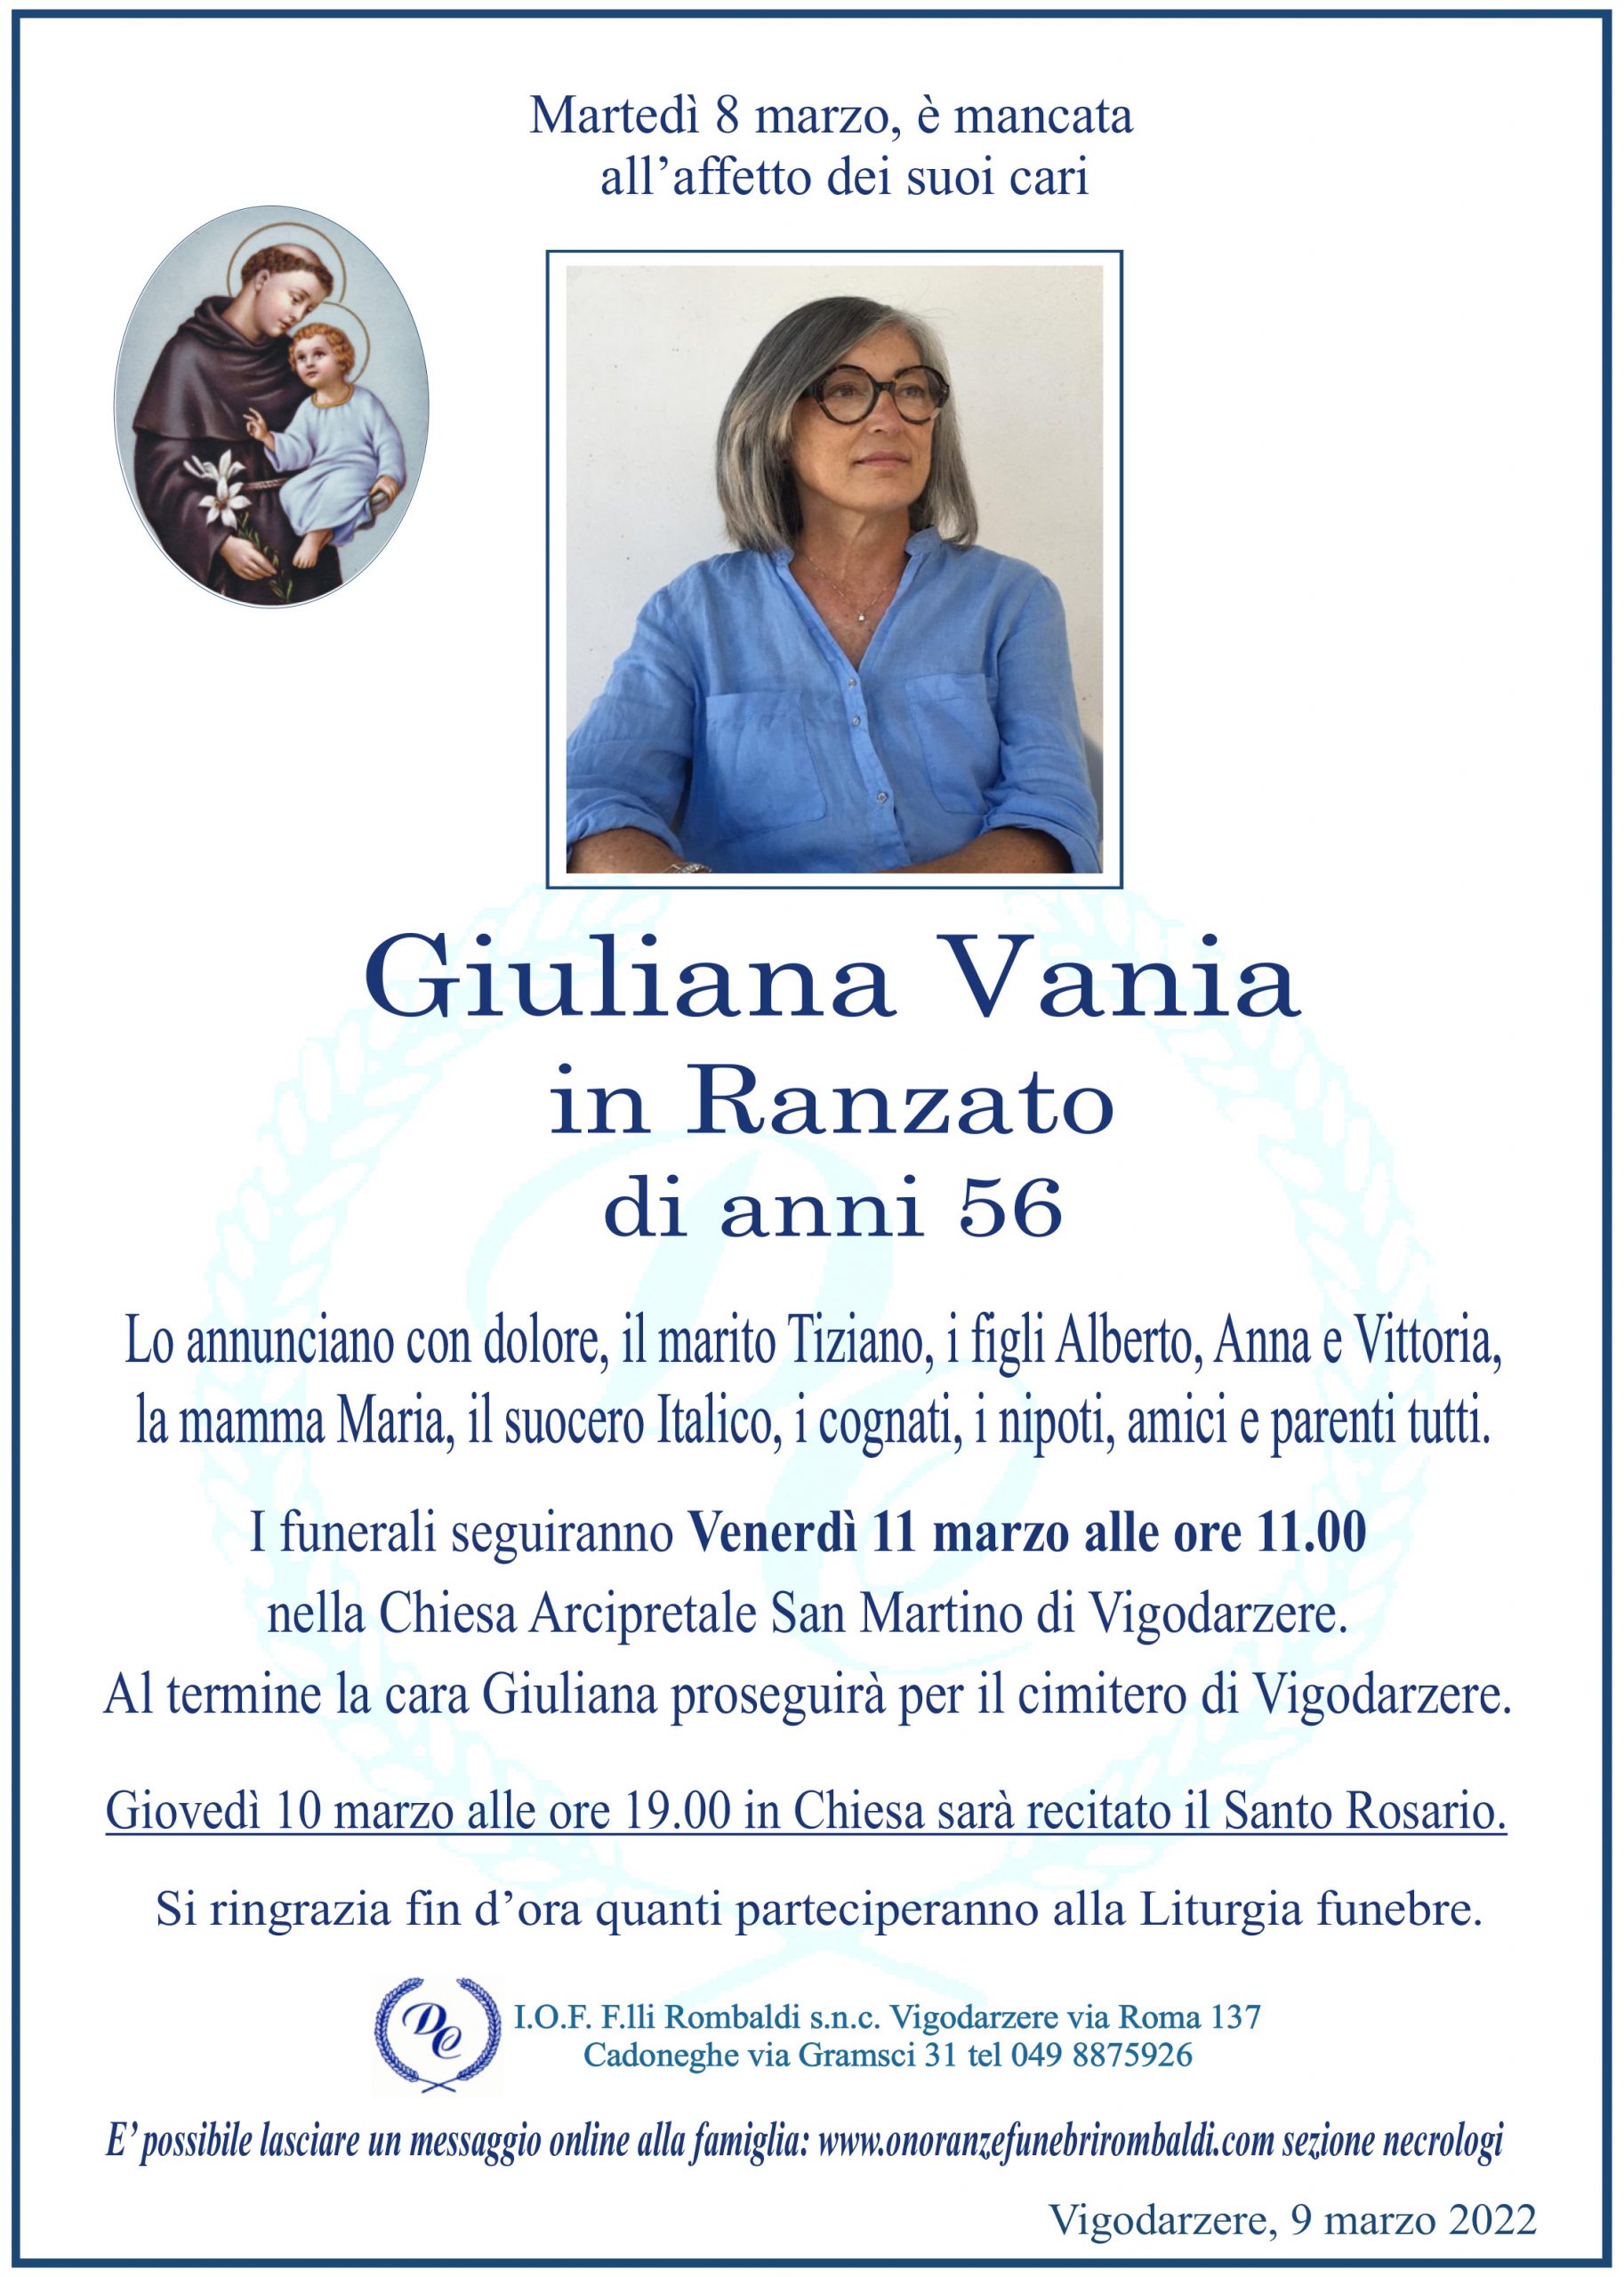 Giuliana Vania in Ranzato